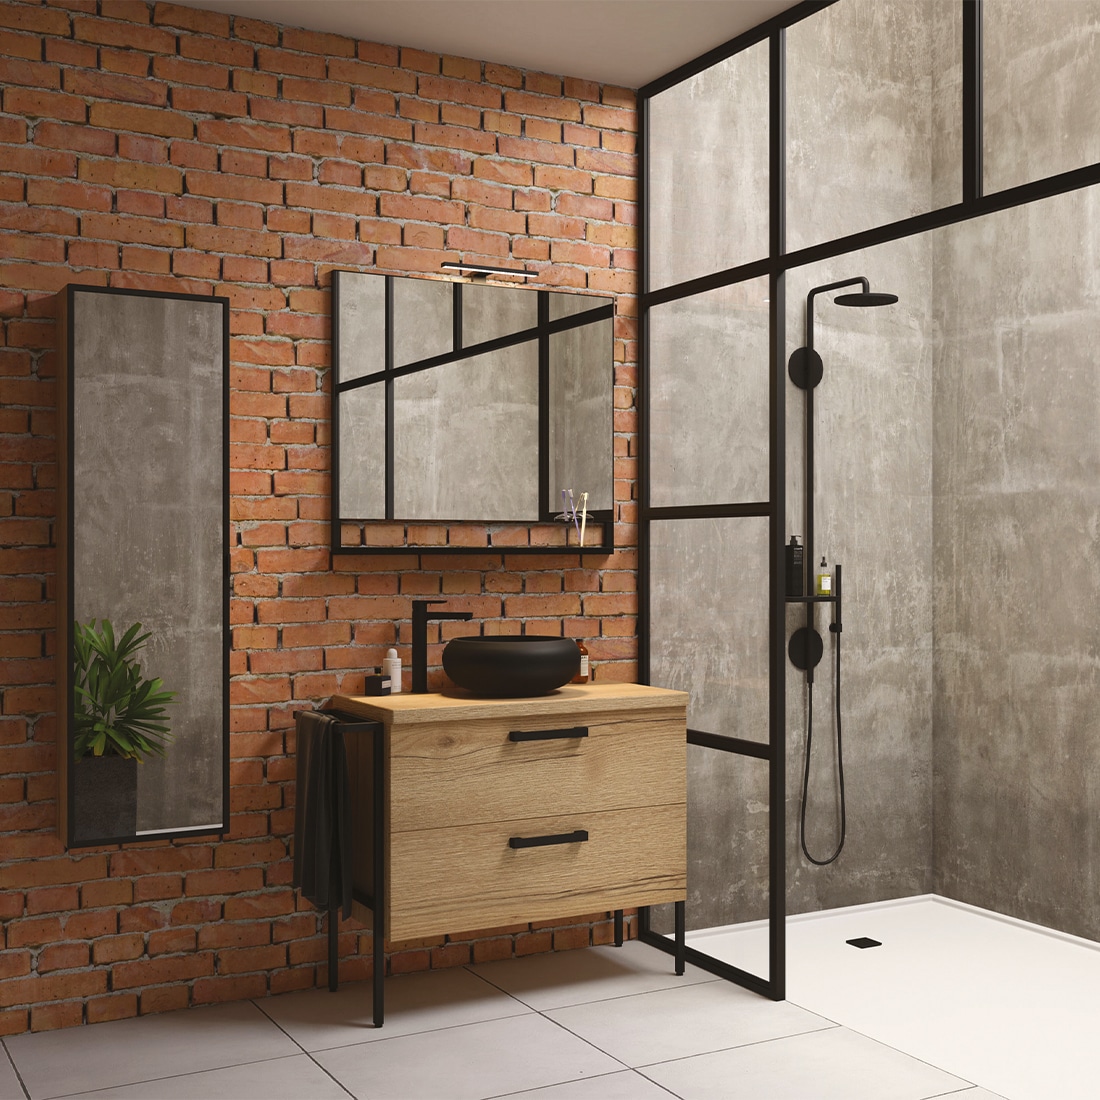 salle de bains inspiration industrielle avec mur en brique et en béton meuble en bois poignée noir et vasque en galet noir mat